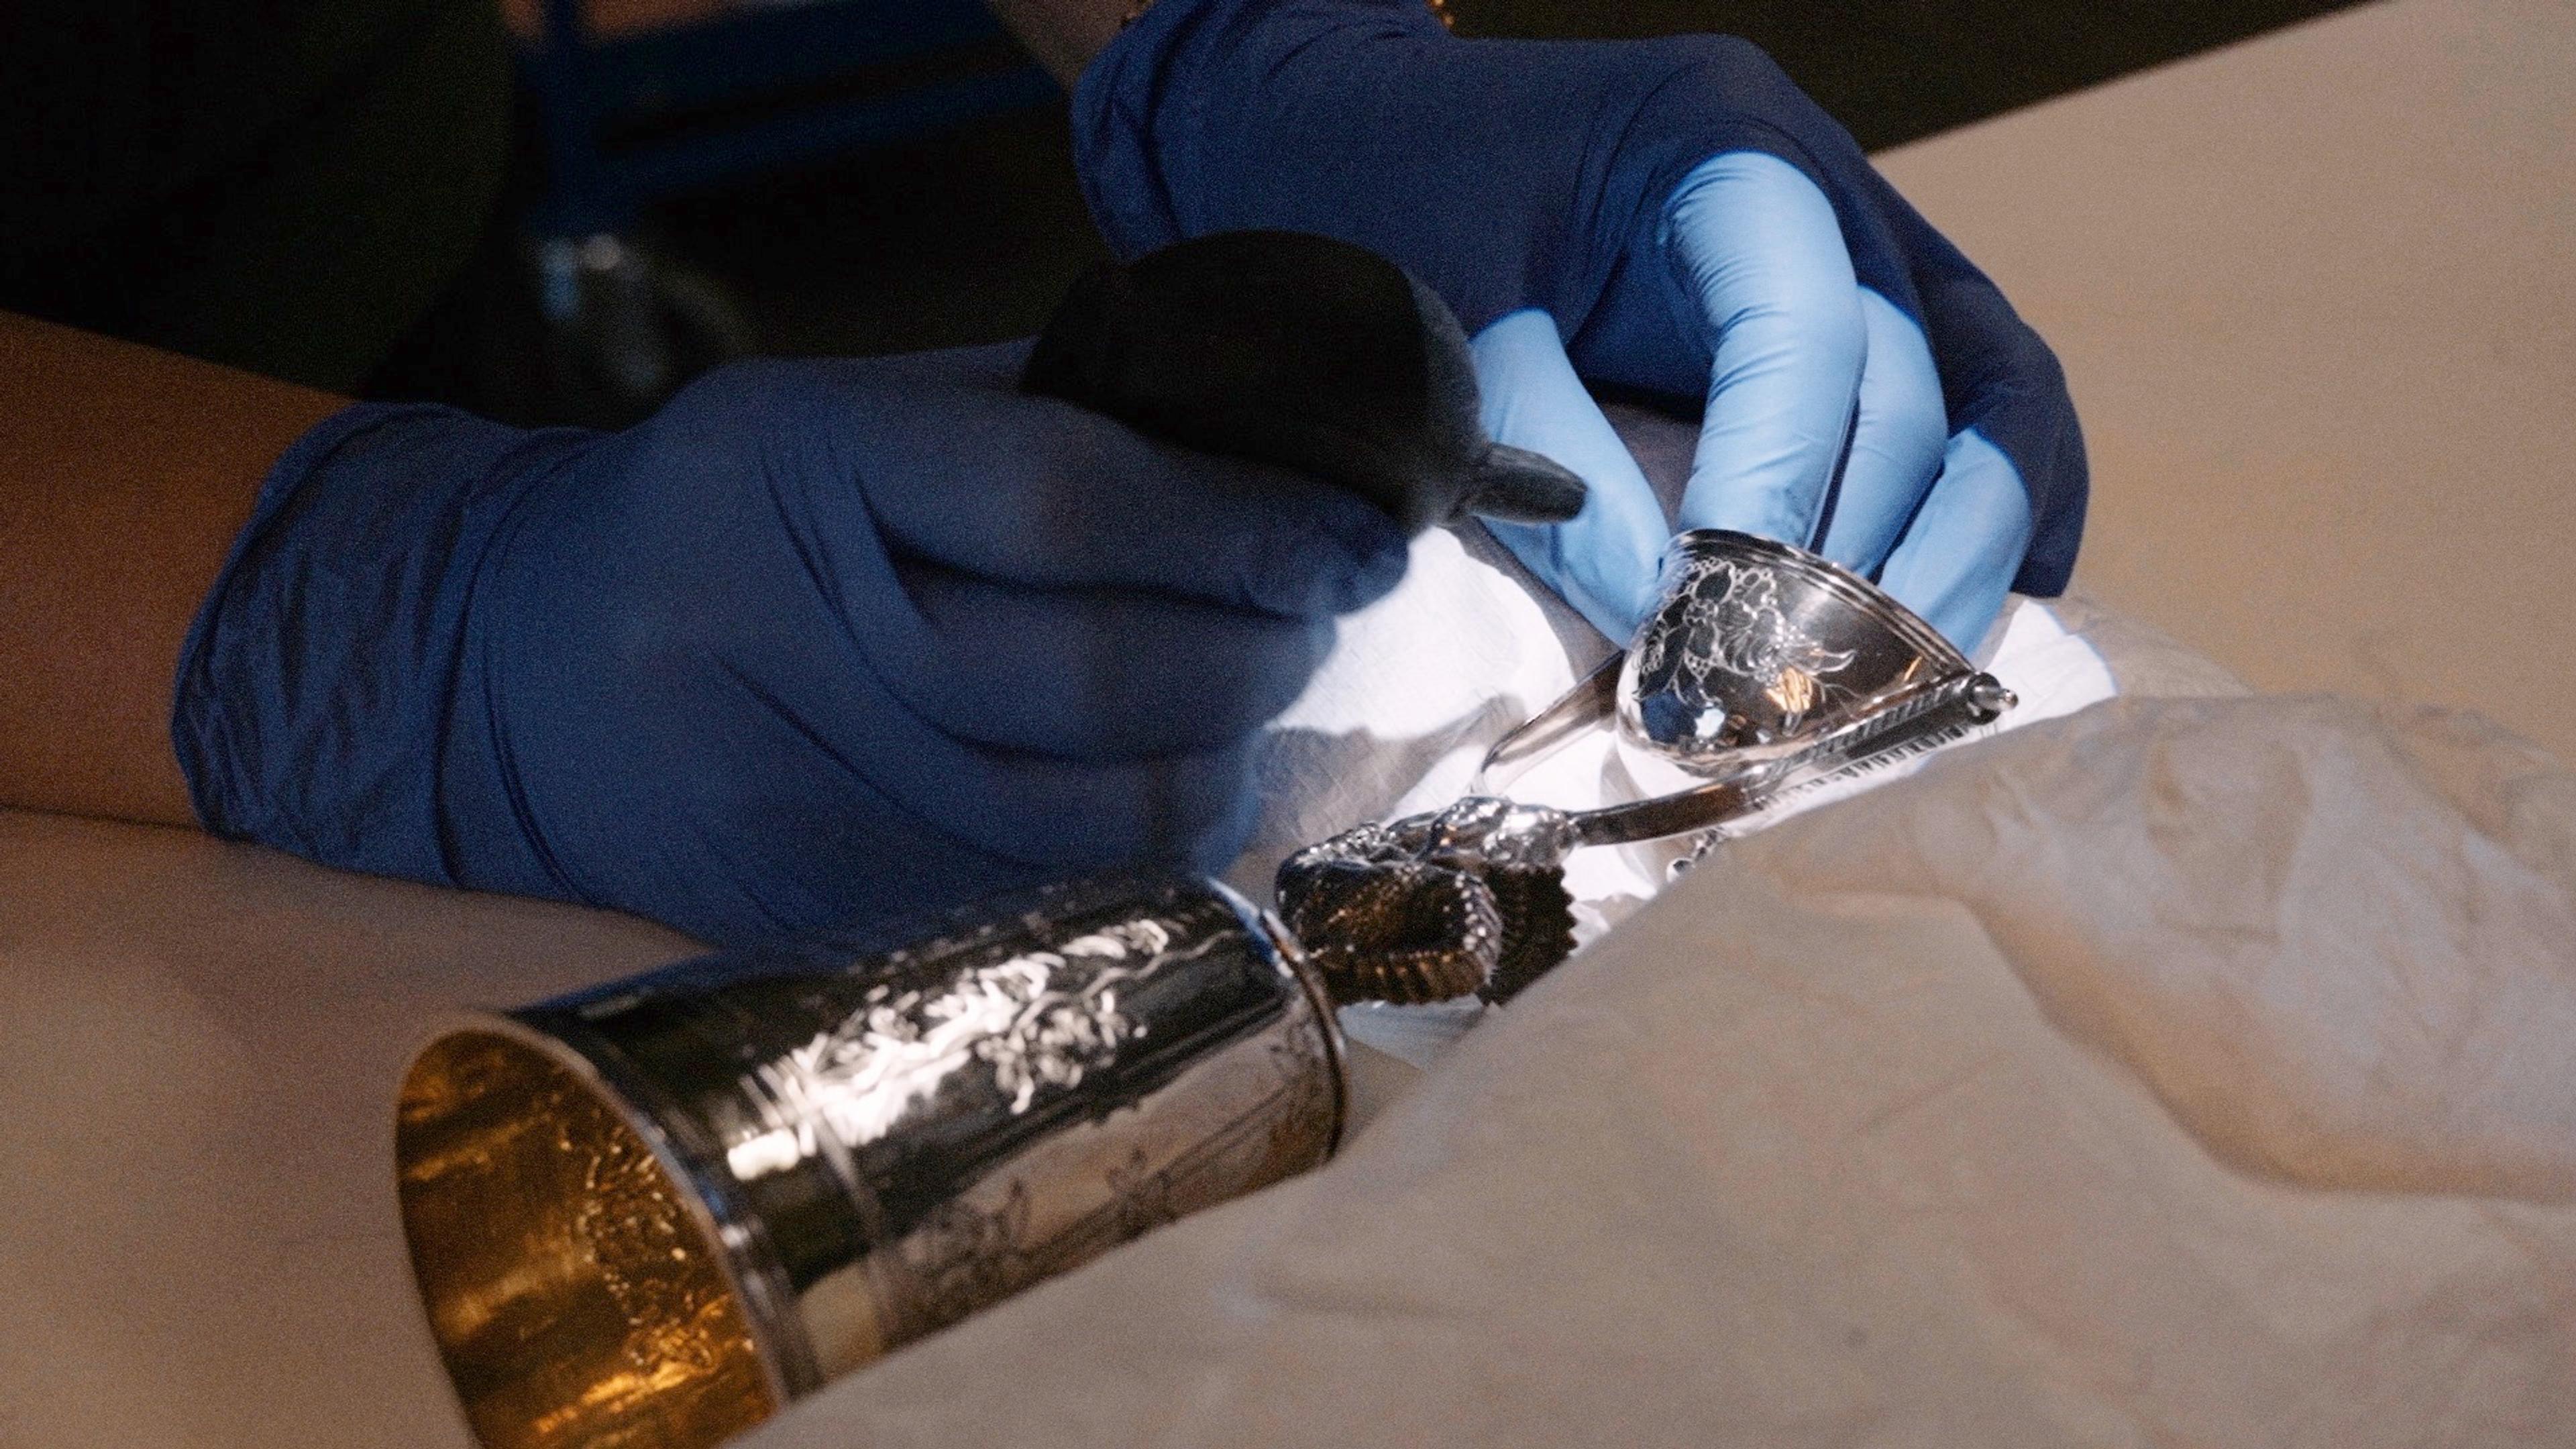 En sølvgjenstand rengjøres forsiktig av et par hender ikledd hansker